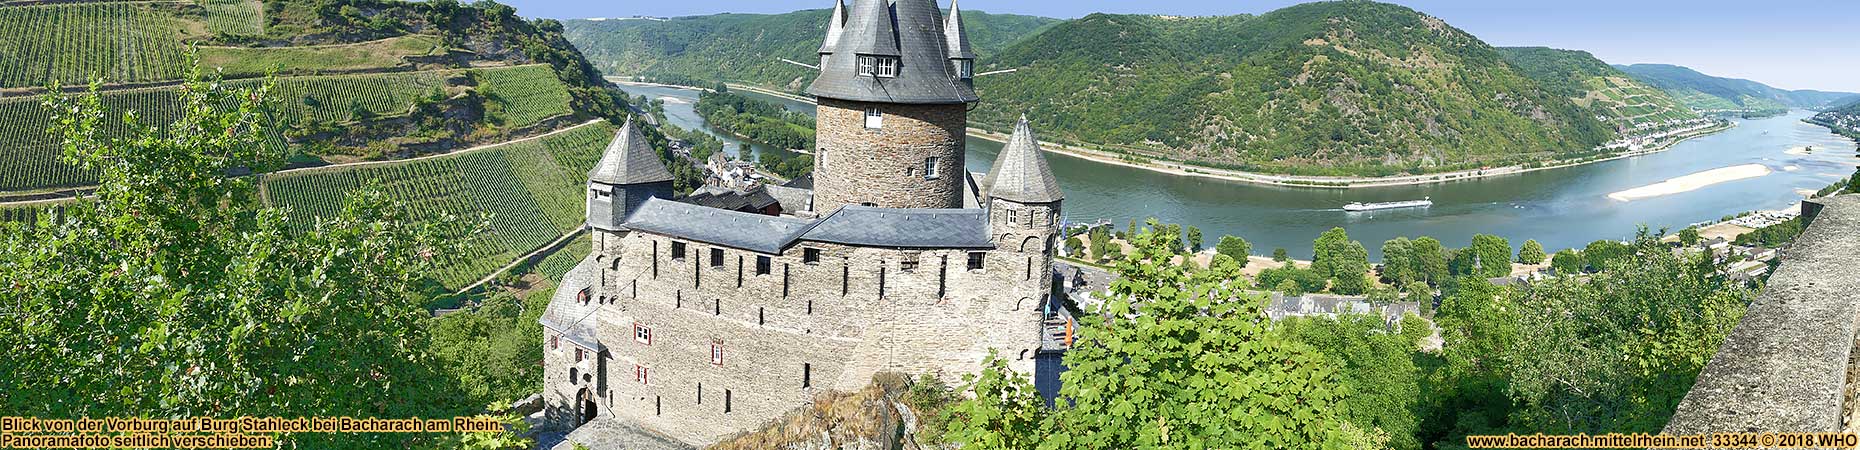 Burg Stahleck oberhalb von Bacharach am Rhein.